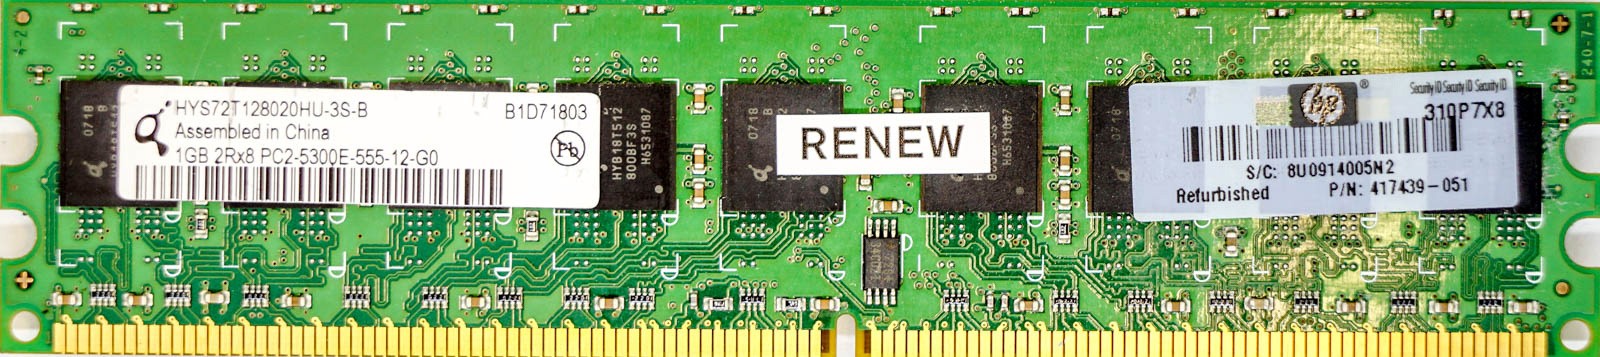 HP (417439-051) - 1GB PC2-5300E (DDR2-667Mhz, 2RX8)